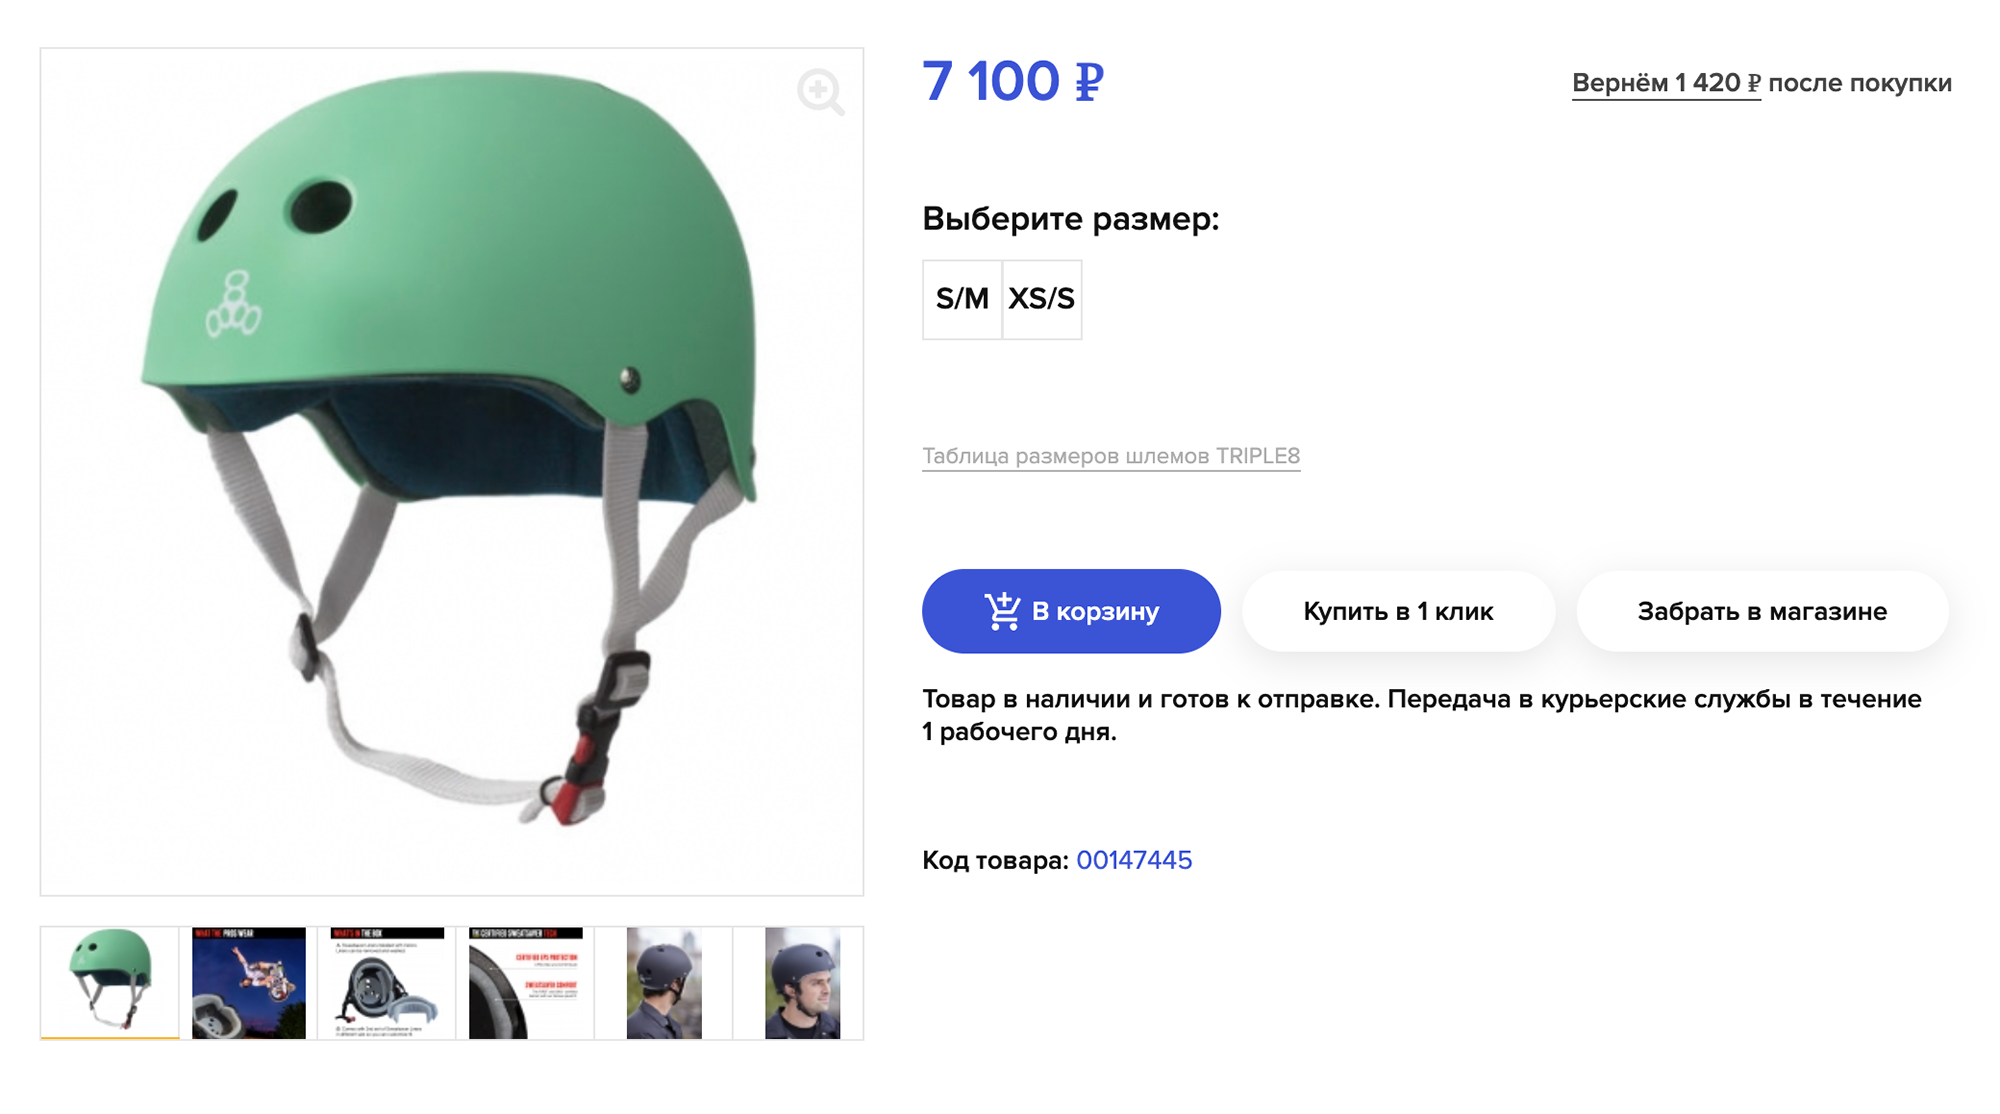 Я бы взяла себе такой шлем. Он предназначен для паркового катания, это модель TRIPLE8 Certified Sweatsaver Helmet Mint Rubber. Источник: skvot.com